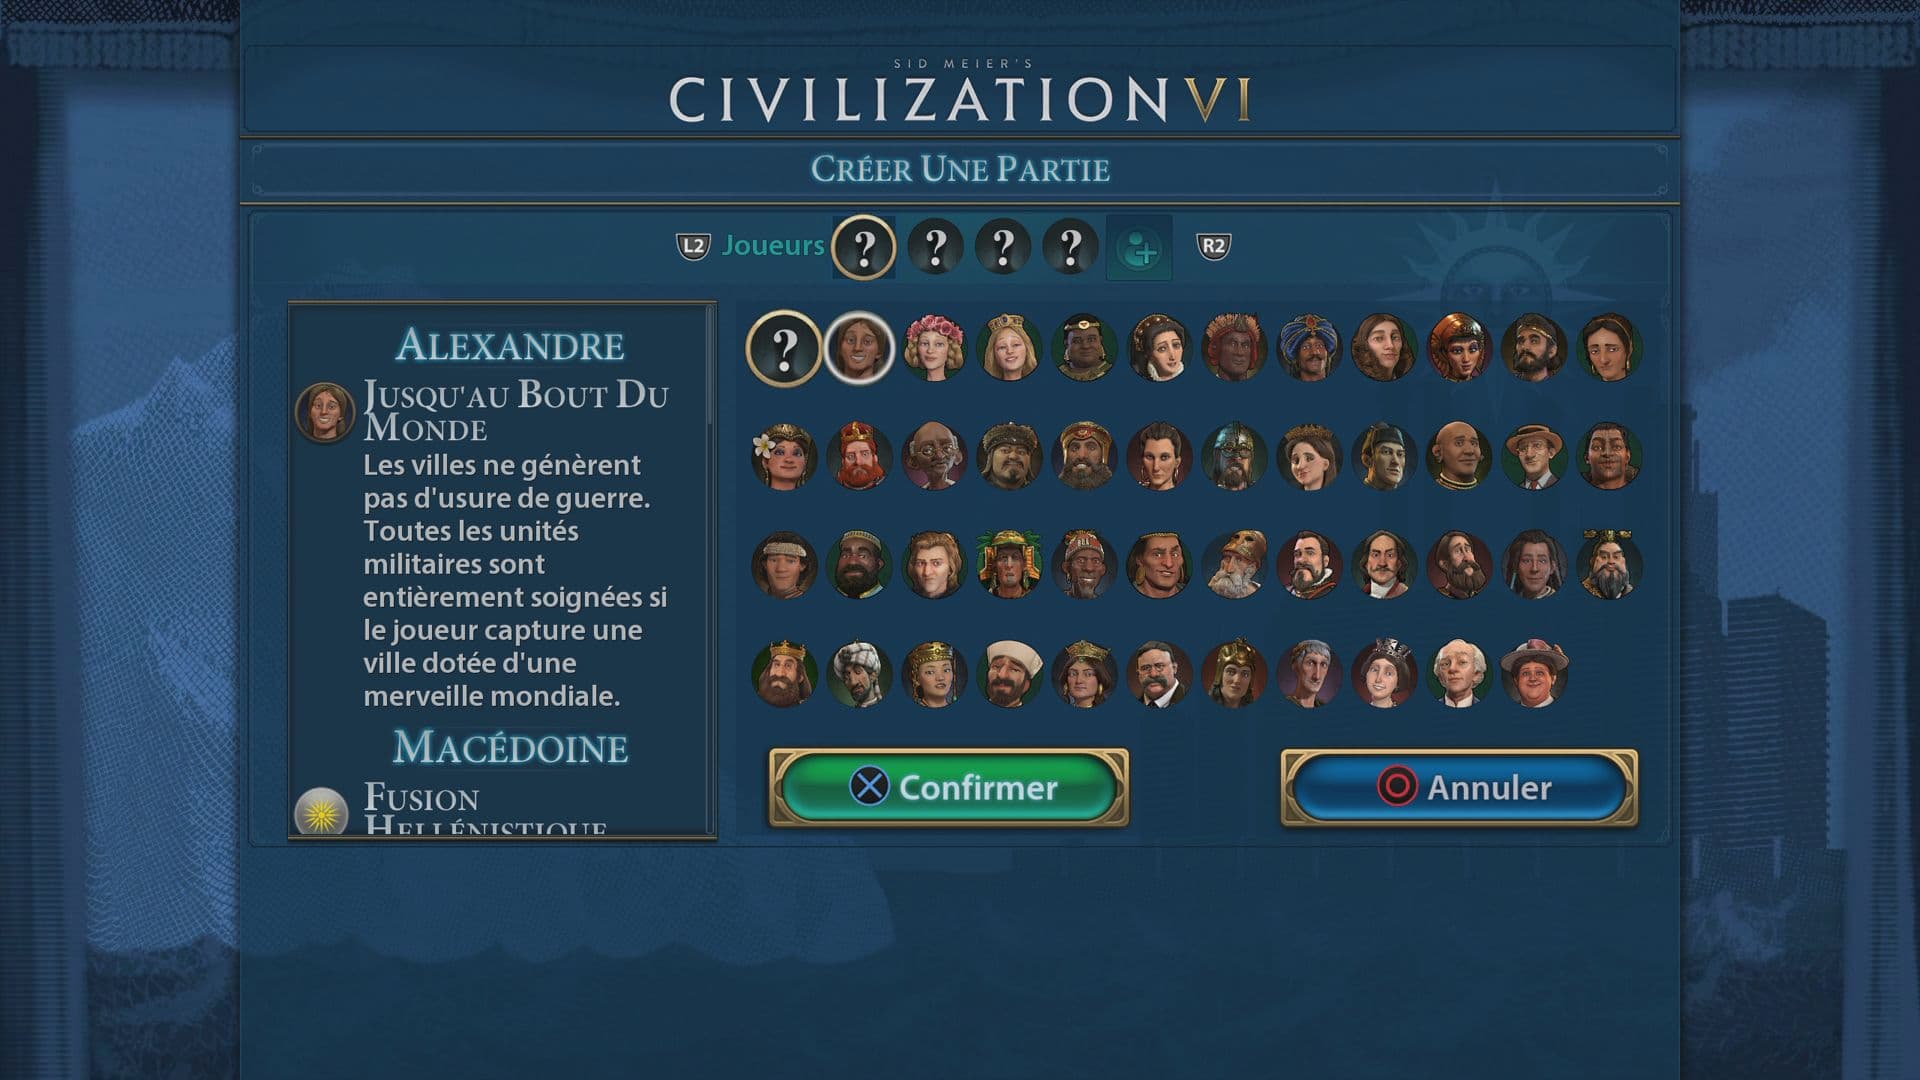 Civilization VI